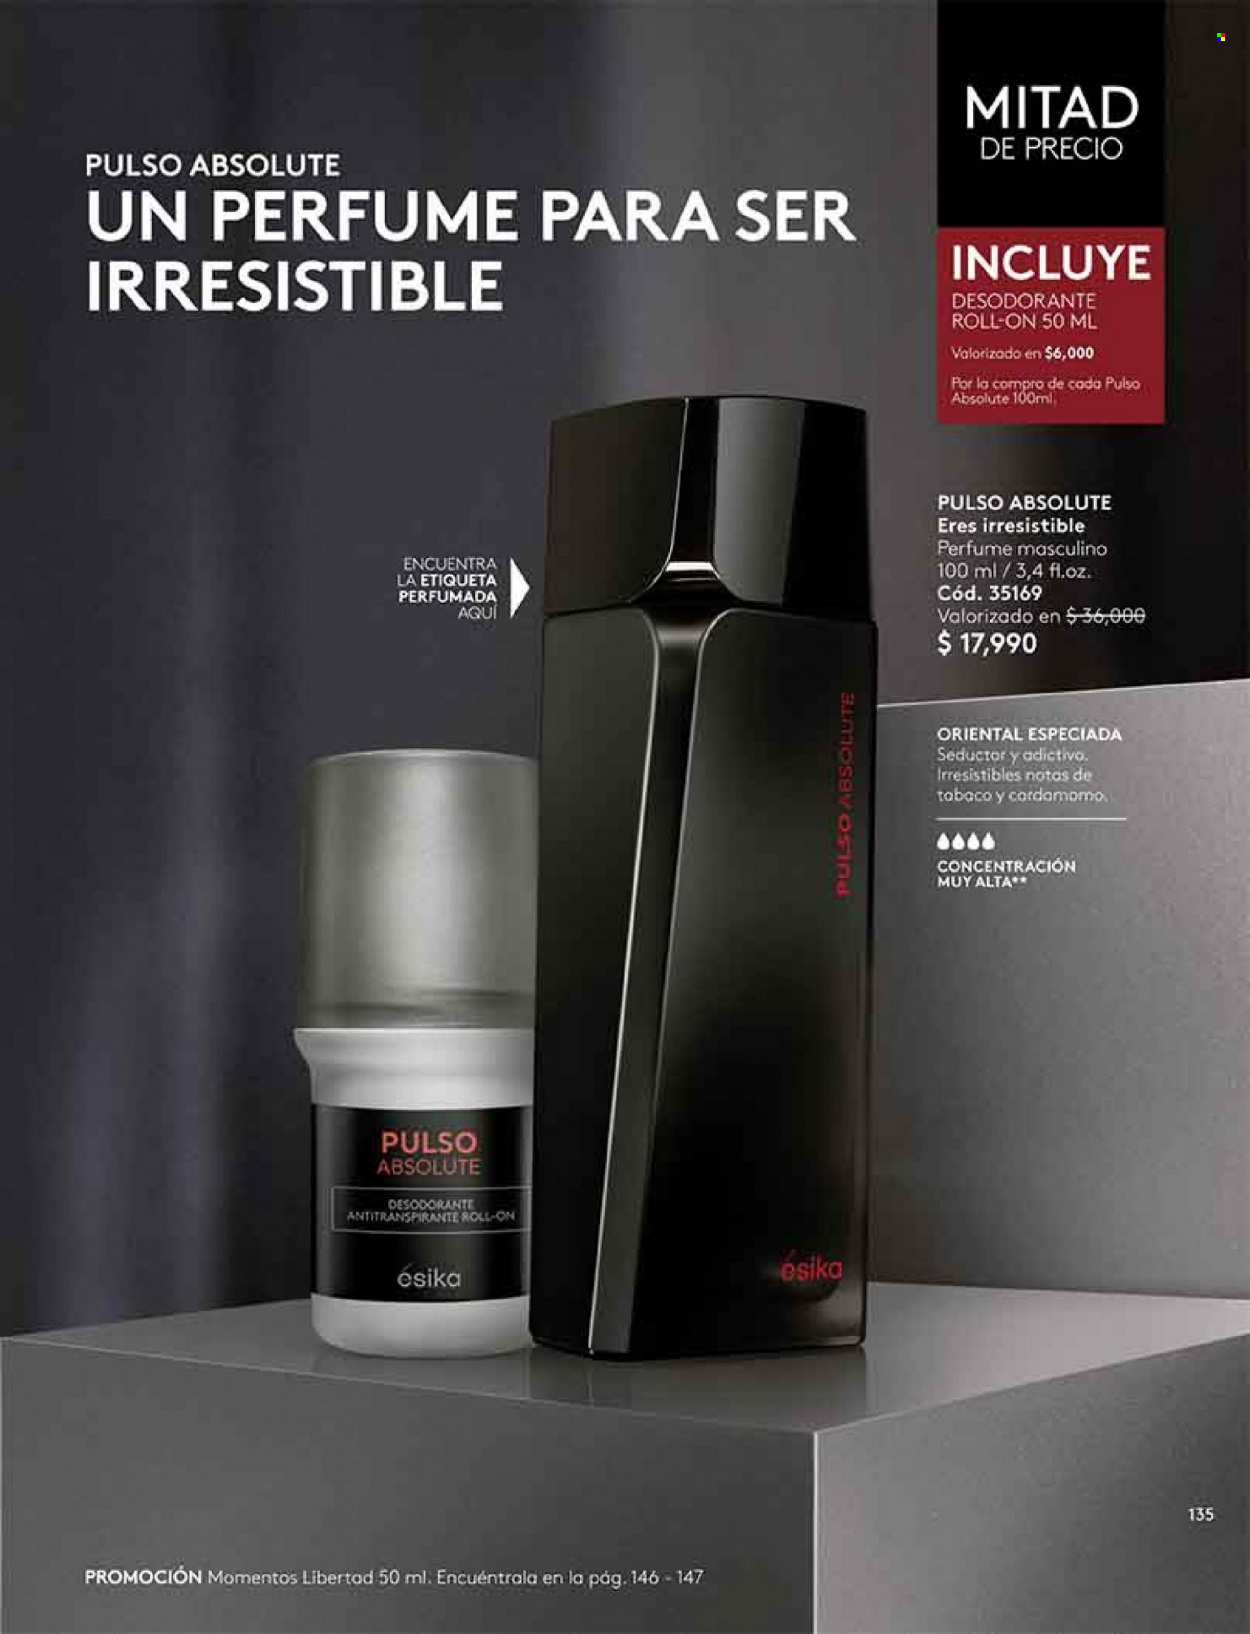 Catálogo Ésika - Ventas - desodorante de bola, desodorante, antitranspirante. Página 135.